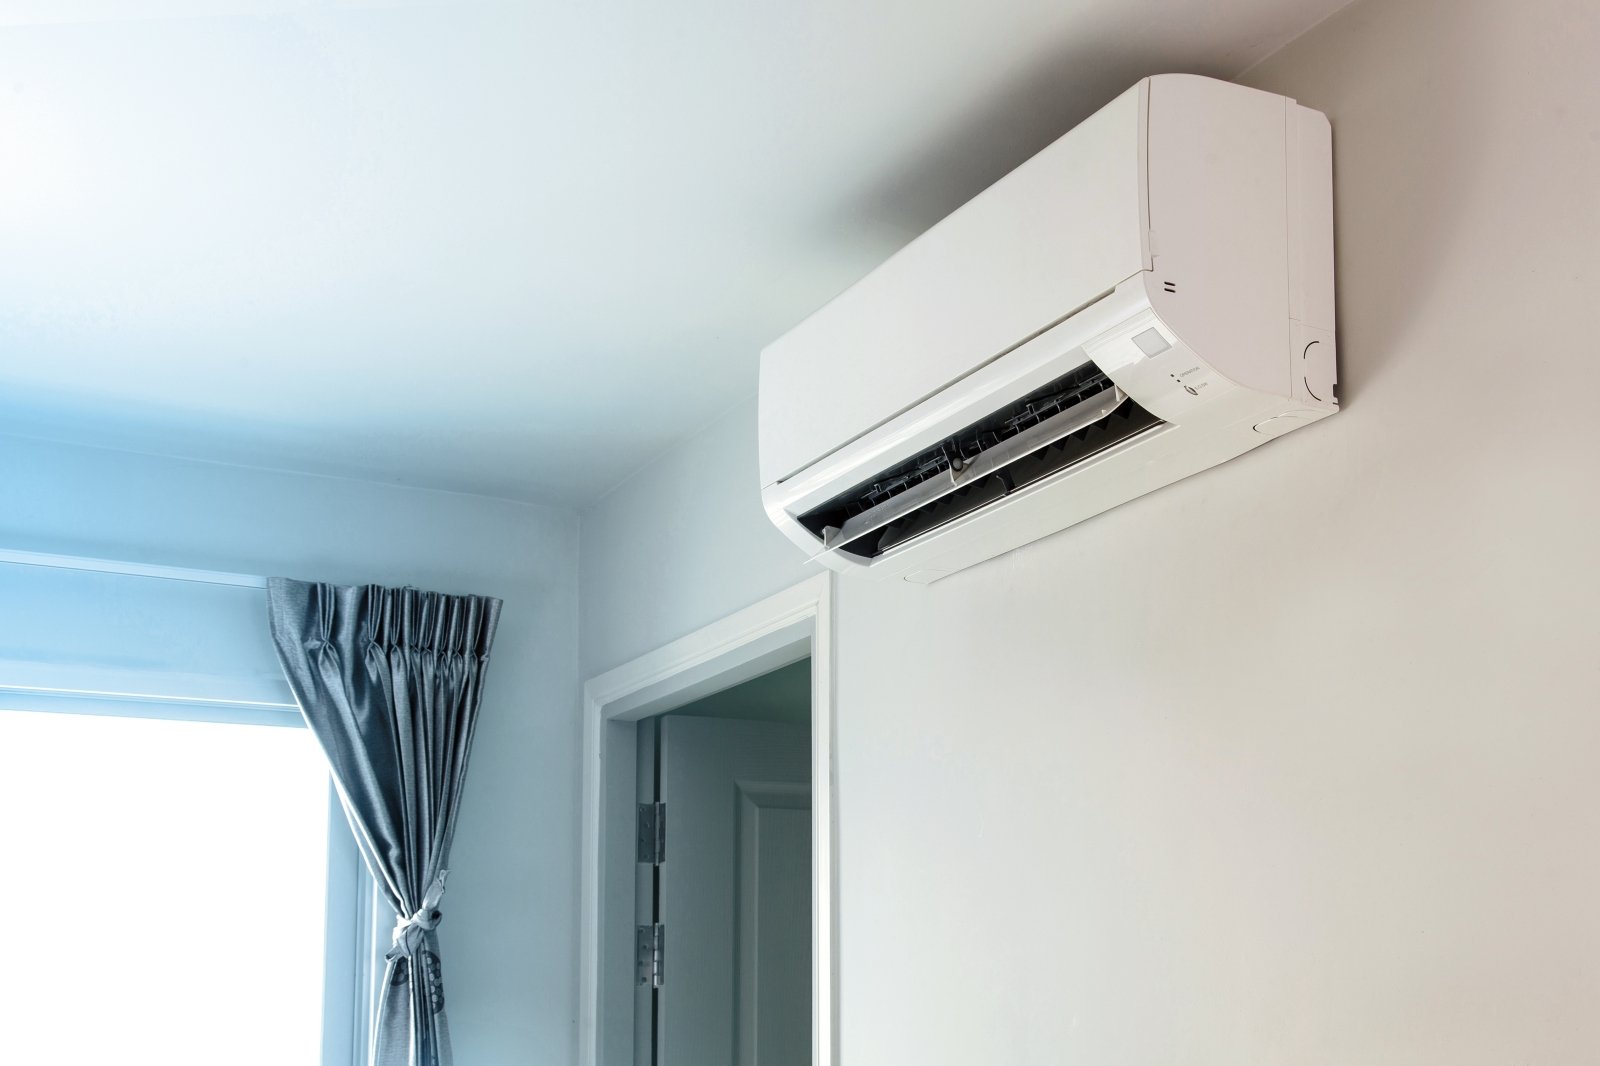 The form panic Harmful Vasarą šis prietaisas namuose tampa nepakeičiamu: kaip išsirinkti ir  naudoti oro kondicionierių - DELFI Būstas